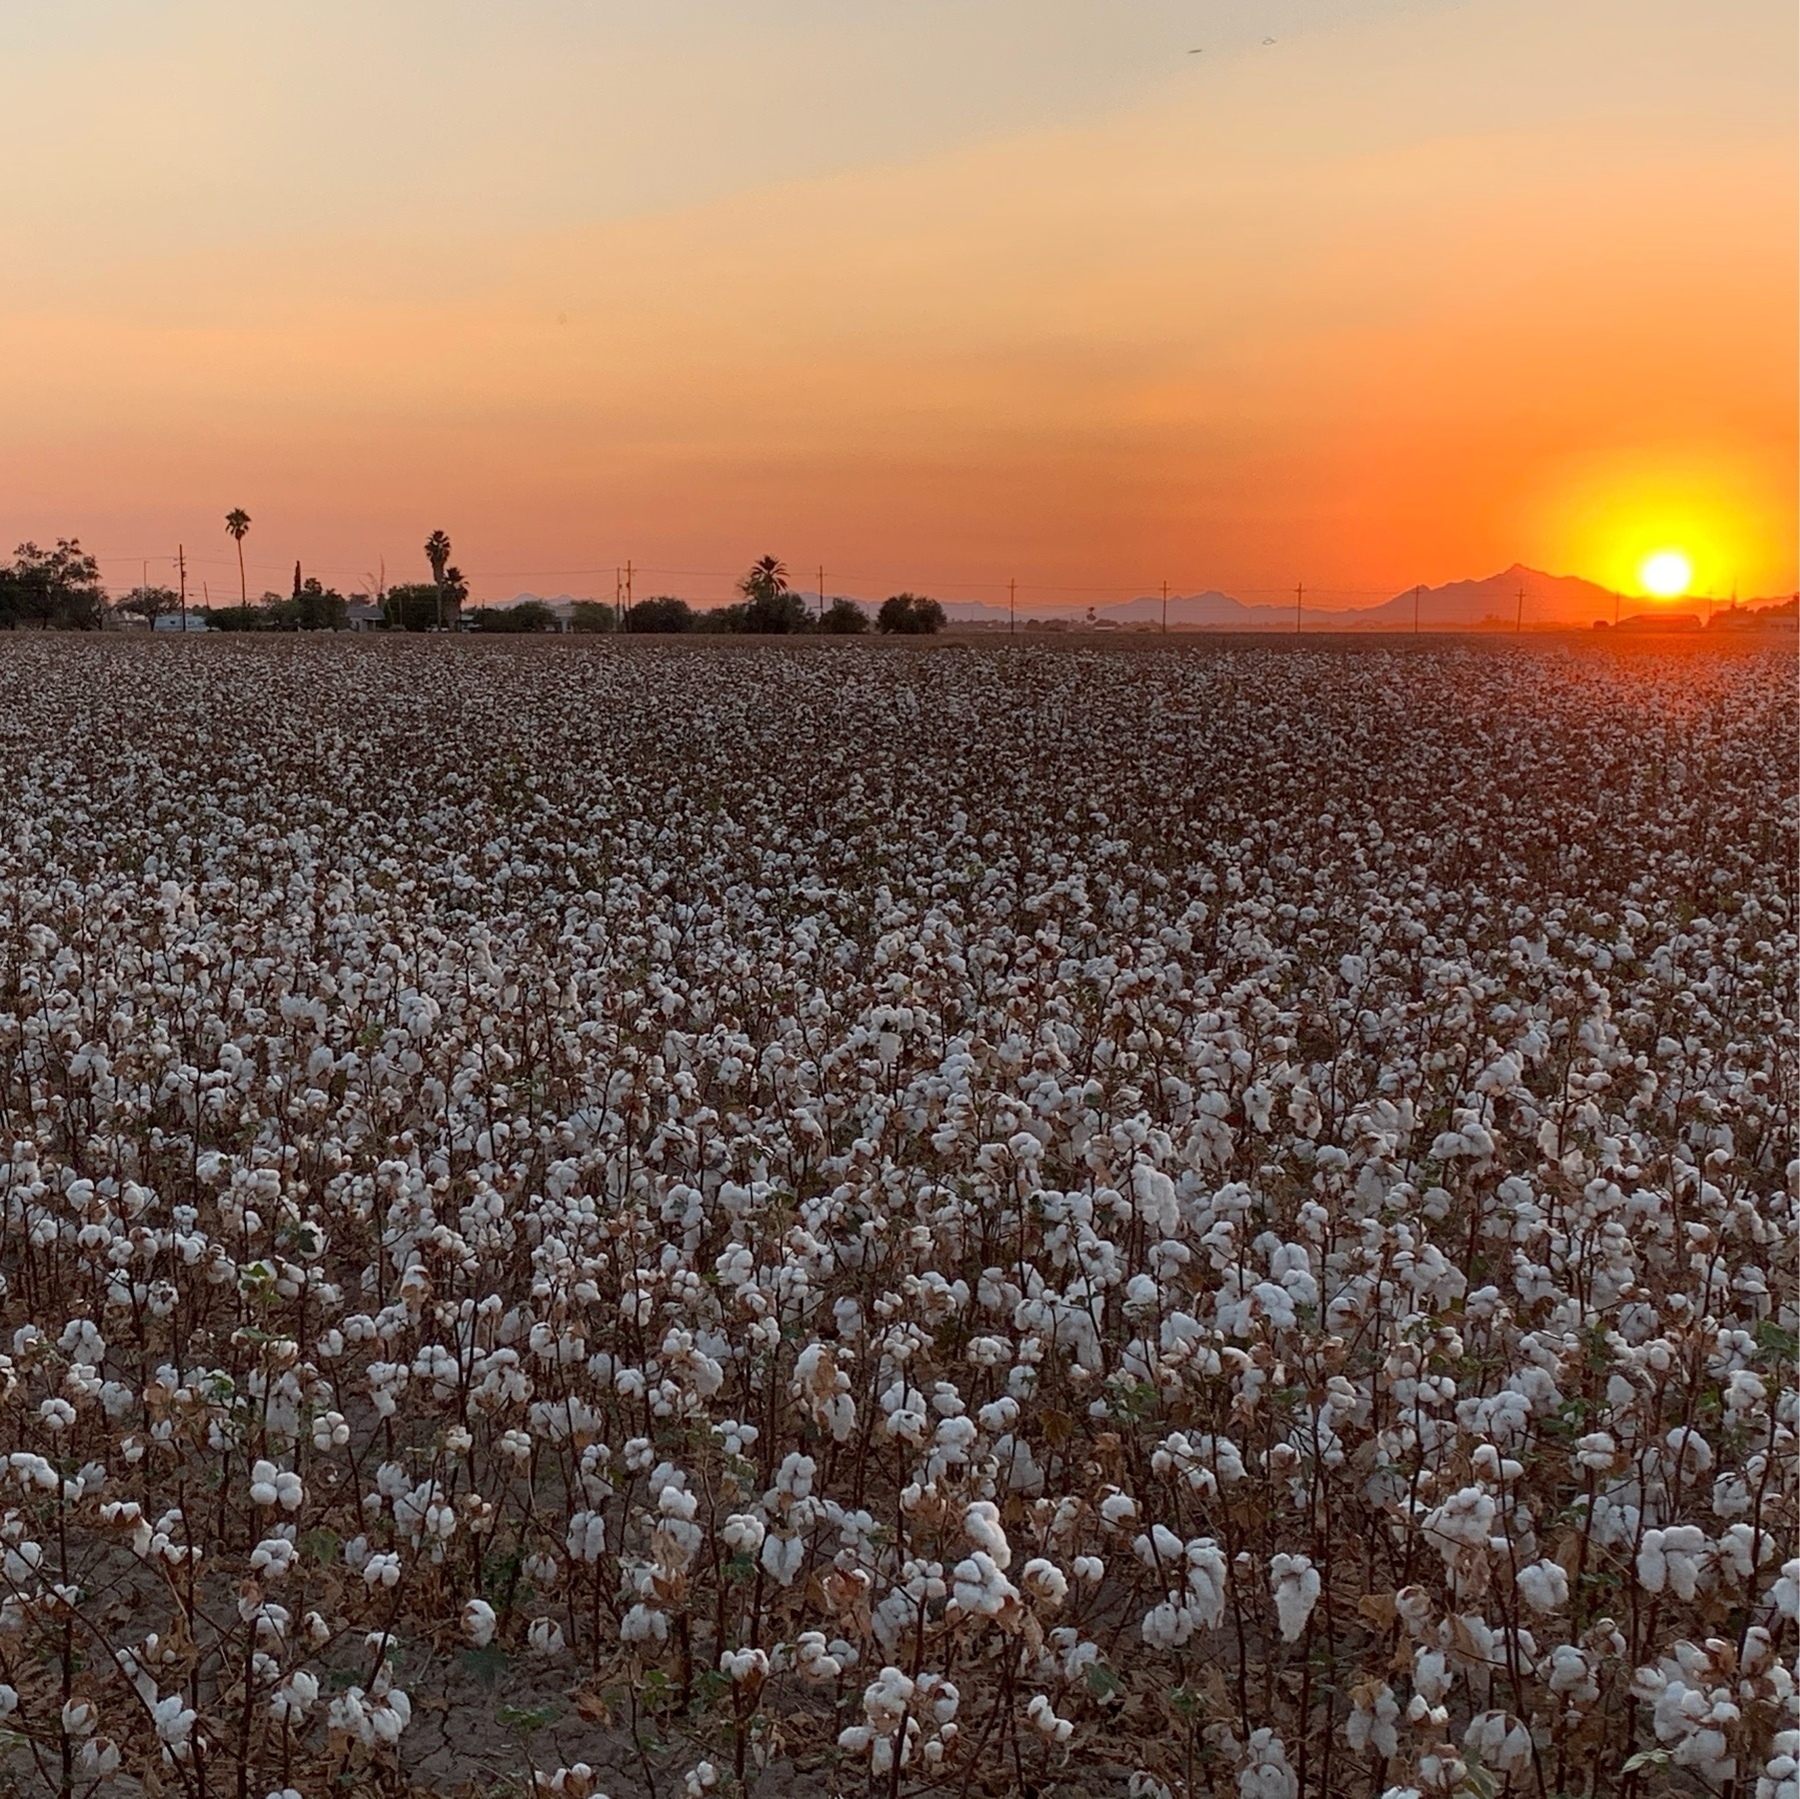 Cottonfield over a sunset in Marana, AZ